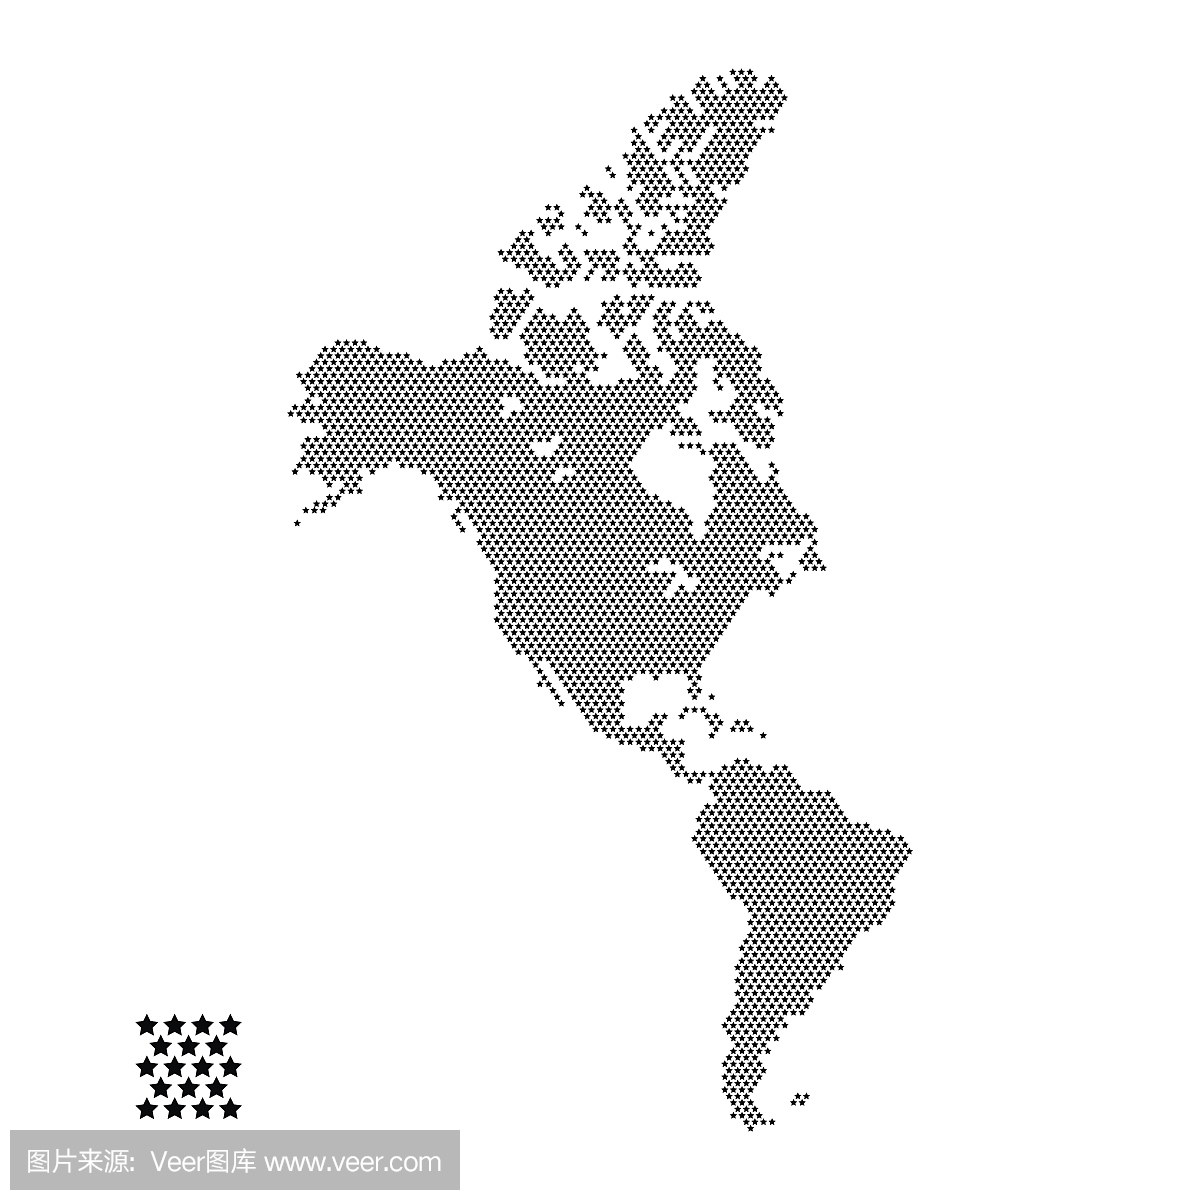 向量插图的星点缀风格北美和南美地图被隔绝在